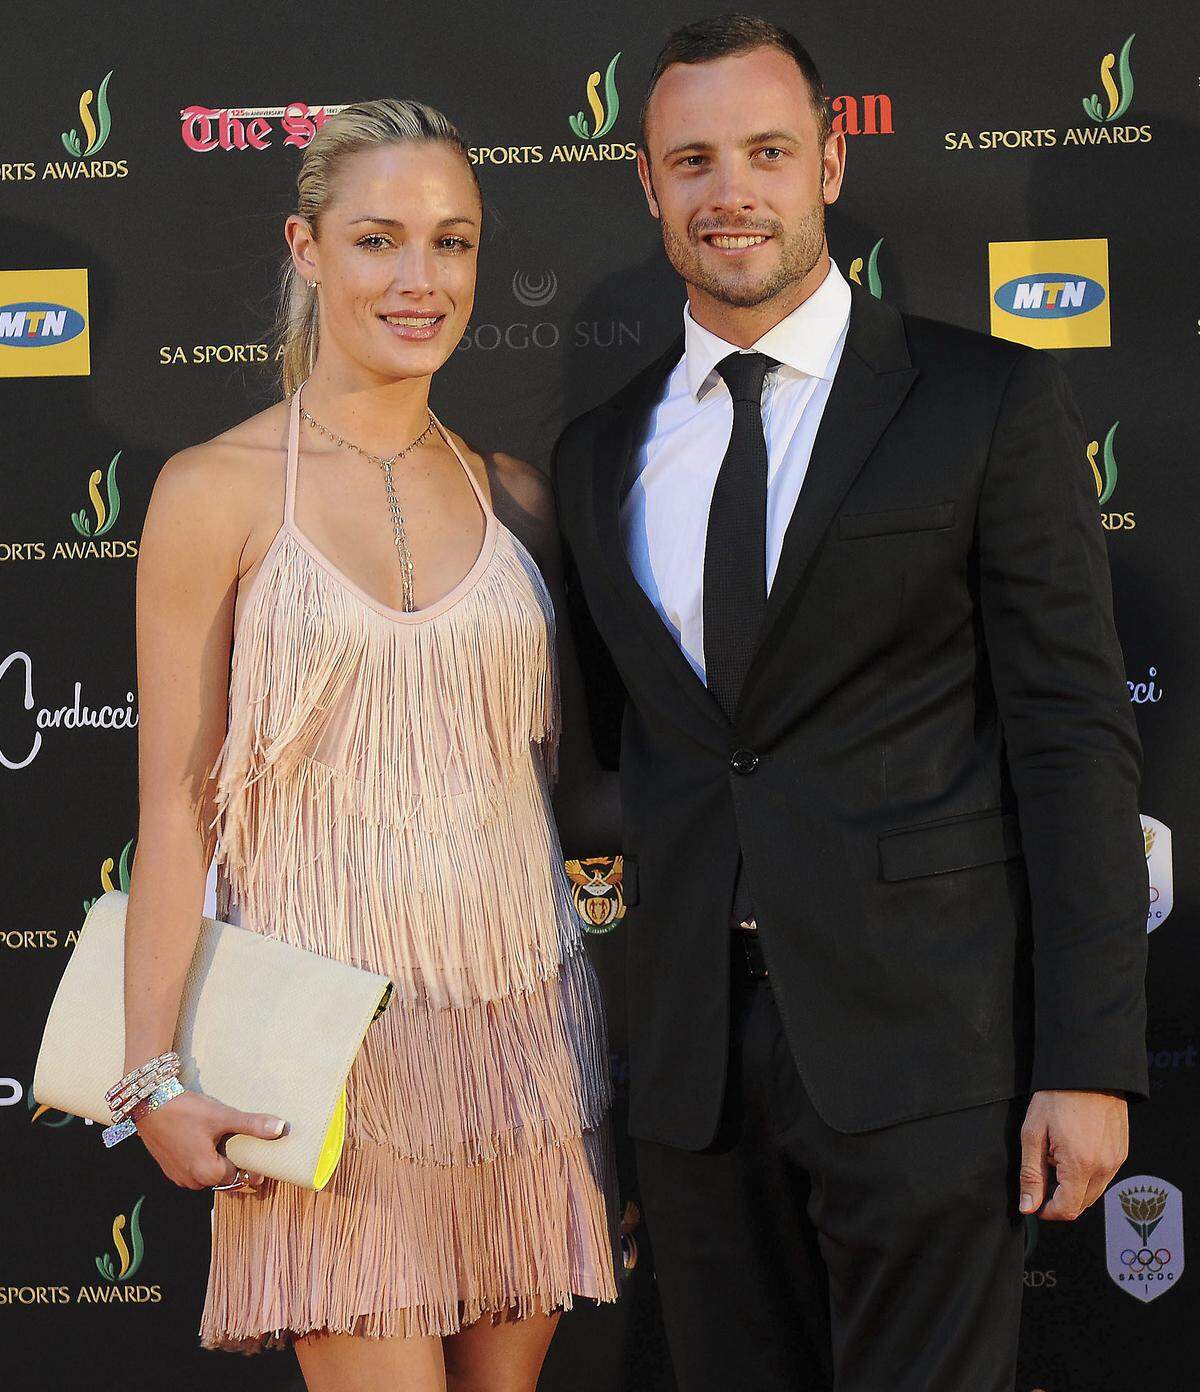 Die sportlichen Erfolge sind seit der Nacht auf den 14. Februar 2013 in den Hintergrund gerückt. In dieser Nacht schießt Pistorius durch die verschlossene Badezimmertür auf seine Freundin Reeva Steenkamp. Pistorius beteuert, auf einen vermeintlichen Einbrecher geschossen zu haben.